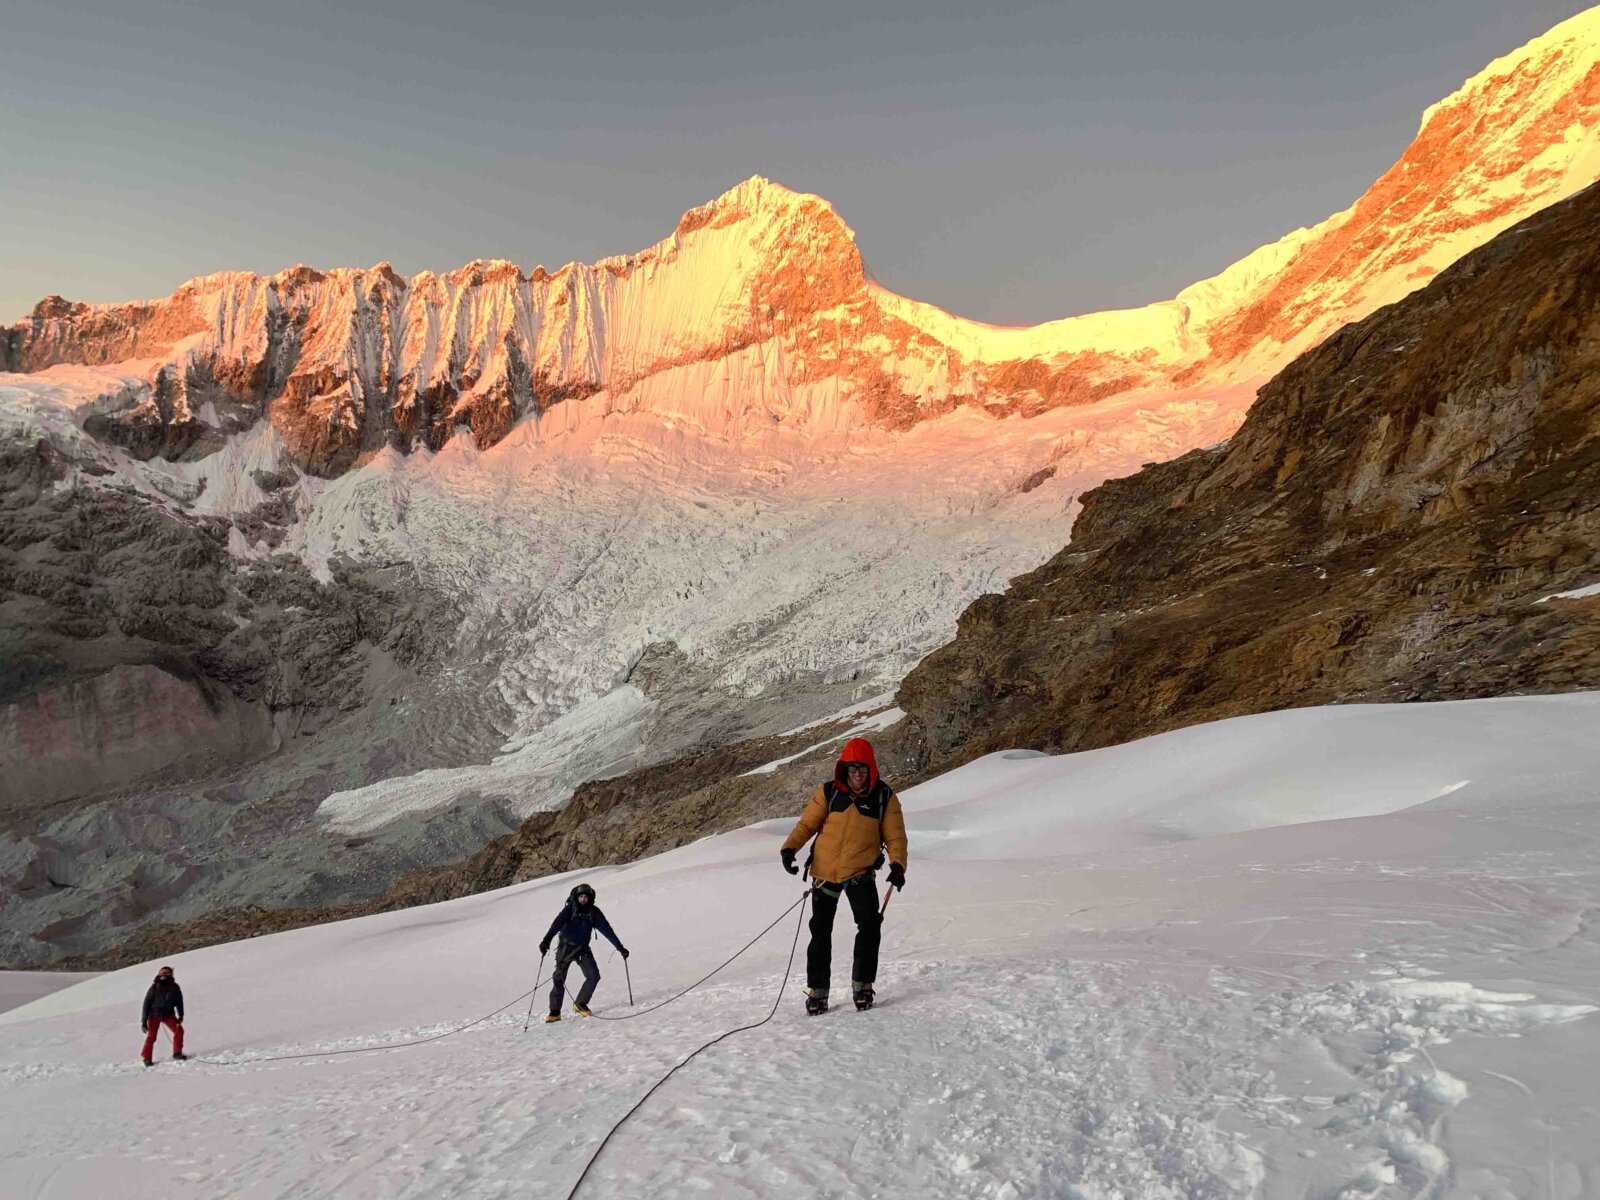 Climbers ascending a glacier on a peak in Peru at sunrise.